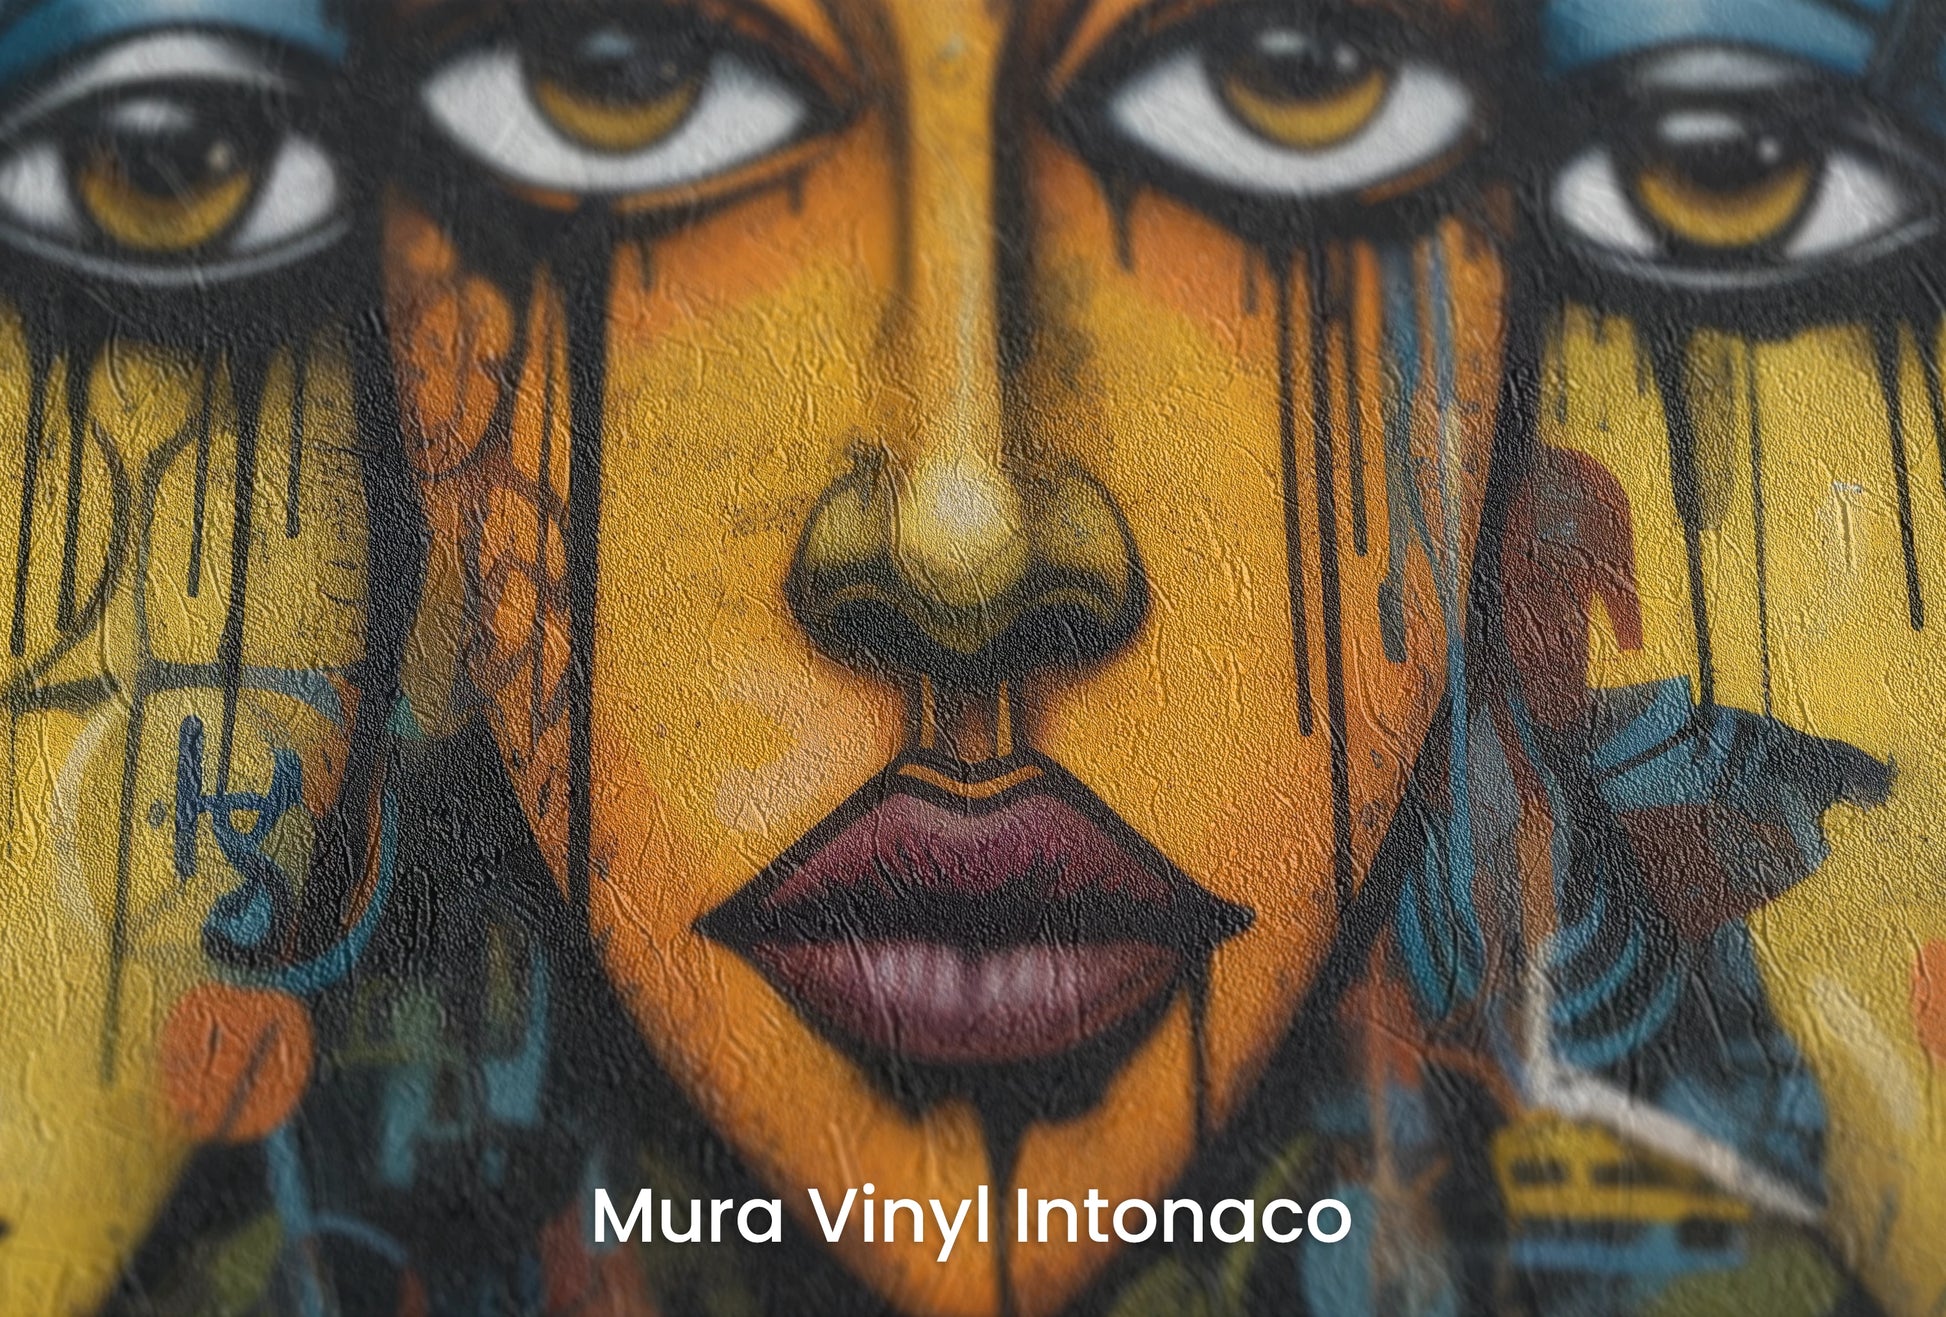 Zbliżenie na artystyczną fototapetę o nazwie Triptych of Minds na podłożu Mura Vinyl Intonaco - struktura tartego tynku.